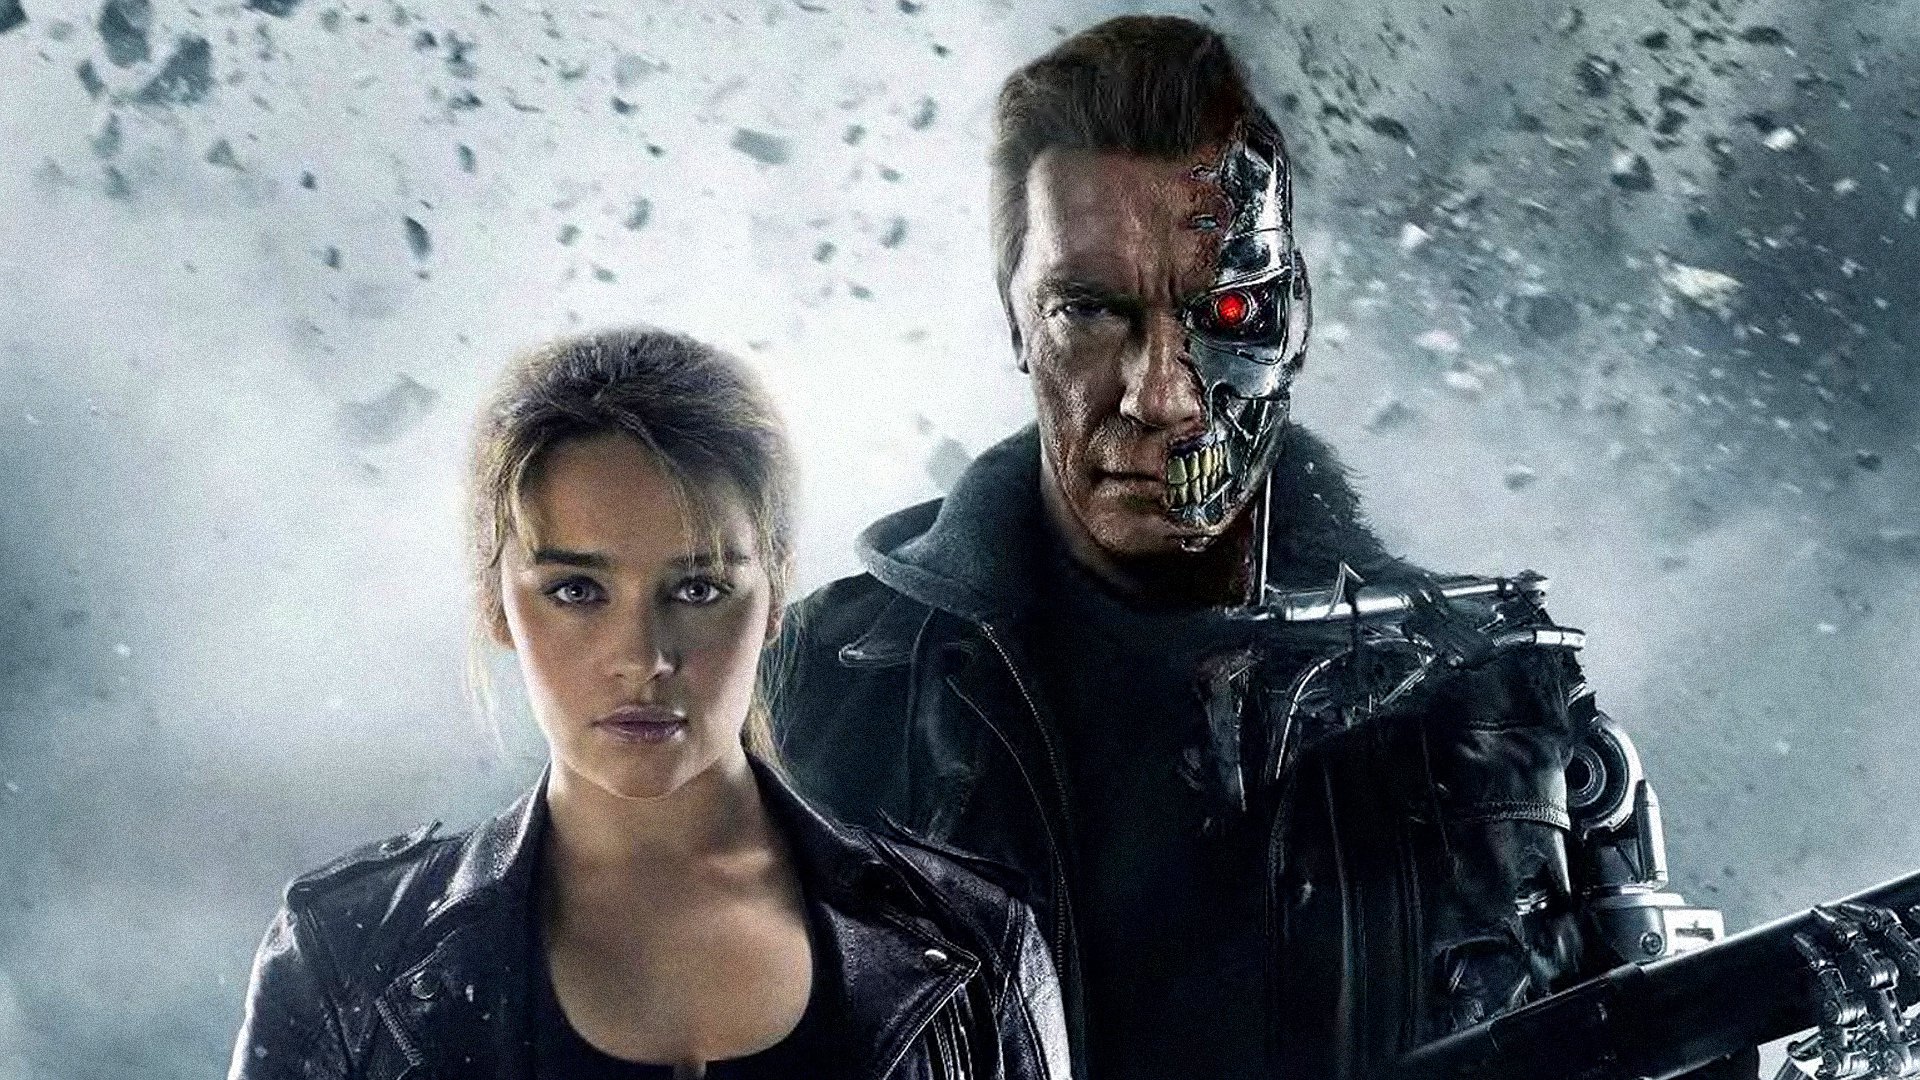 Descarga gratuita de fondo de pantalla para móvil de Películas, Terminator Génesis.